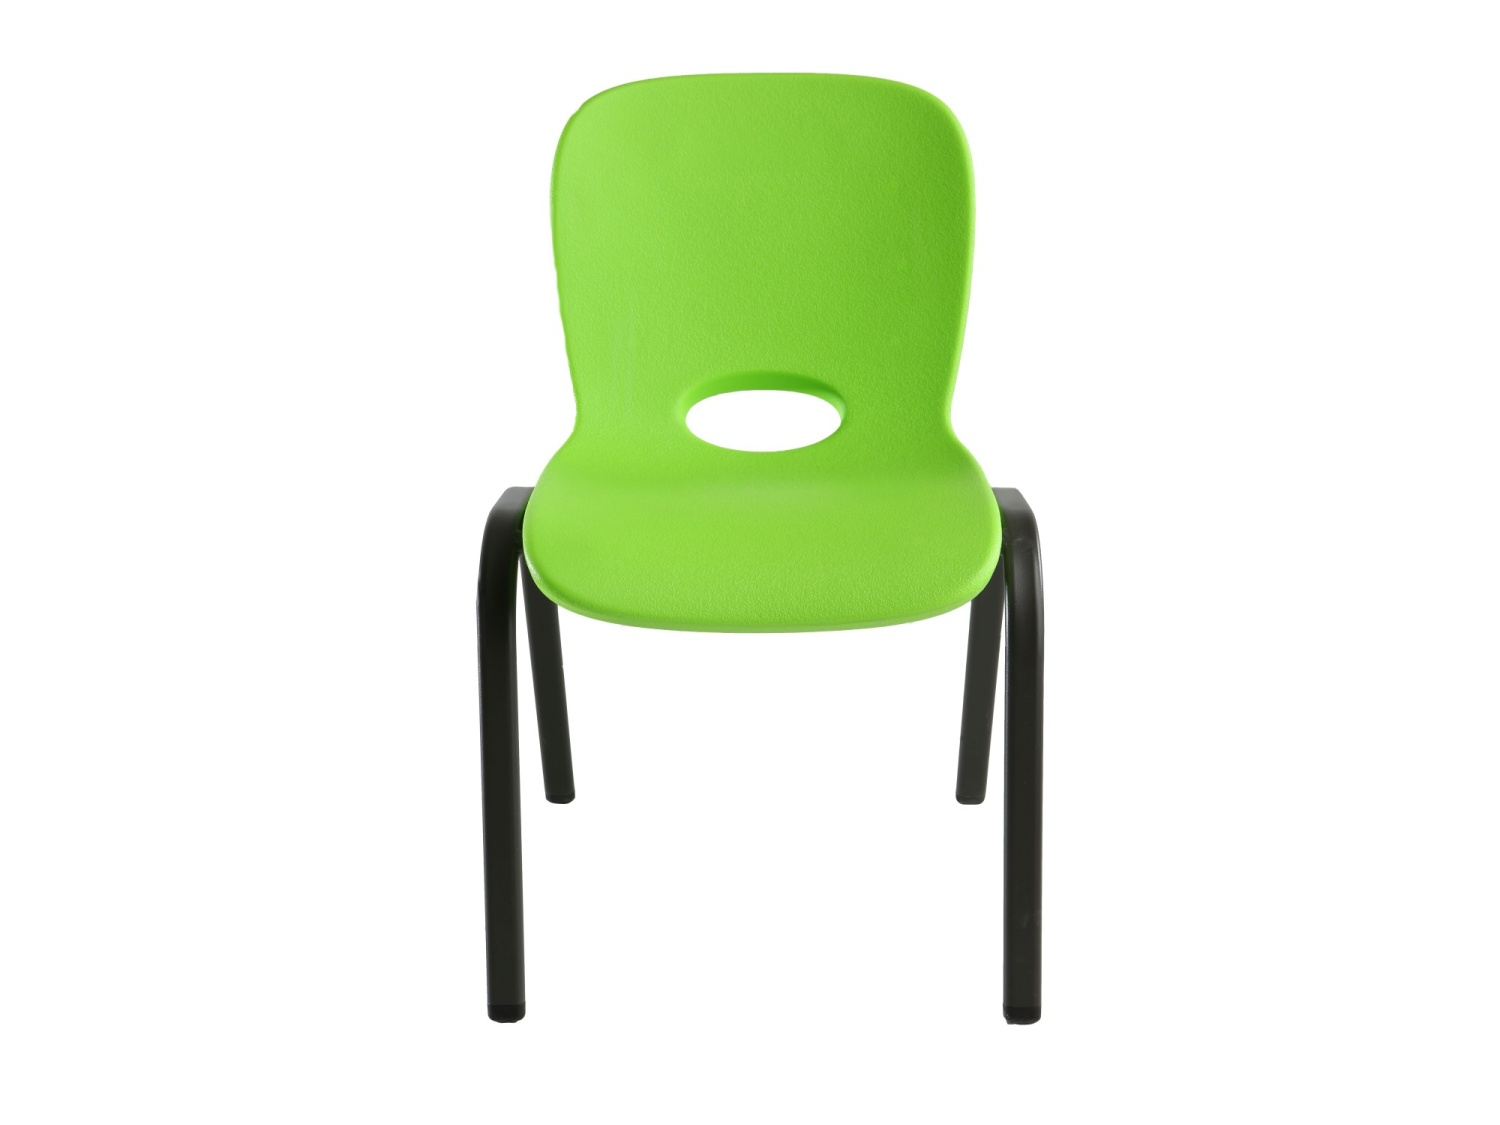 dětská židle zelená LIFETIME 80474 / 80393 LG1191